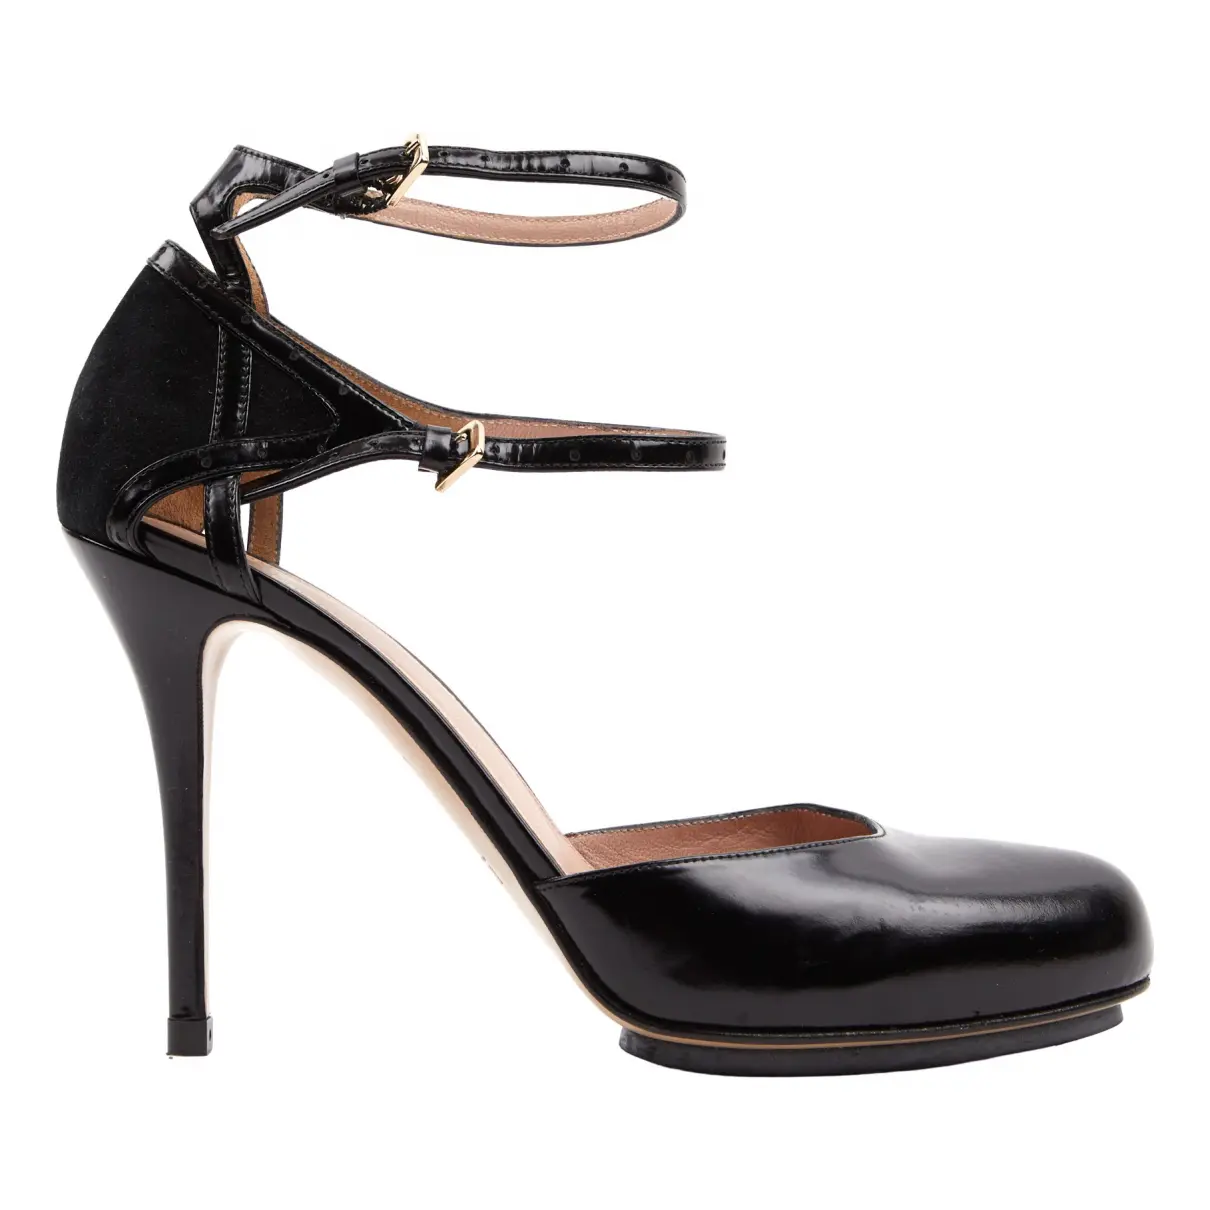 Leather heels Hugo Boss